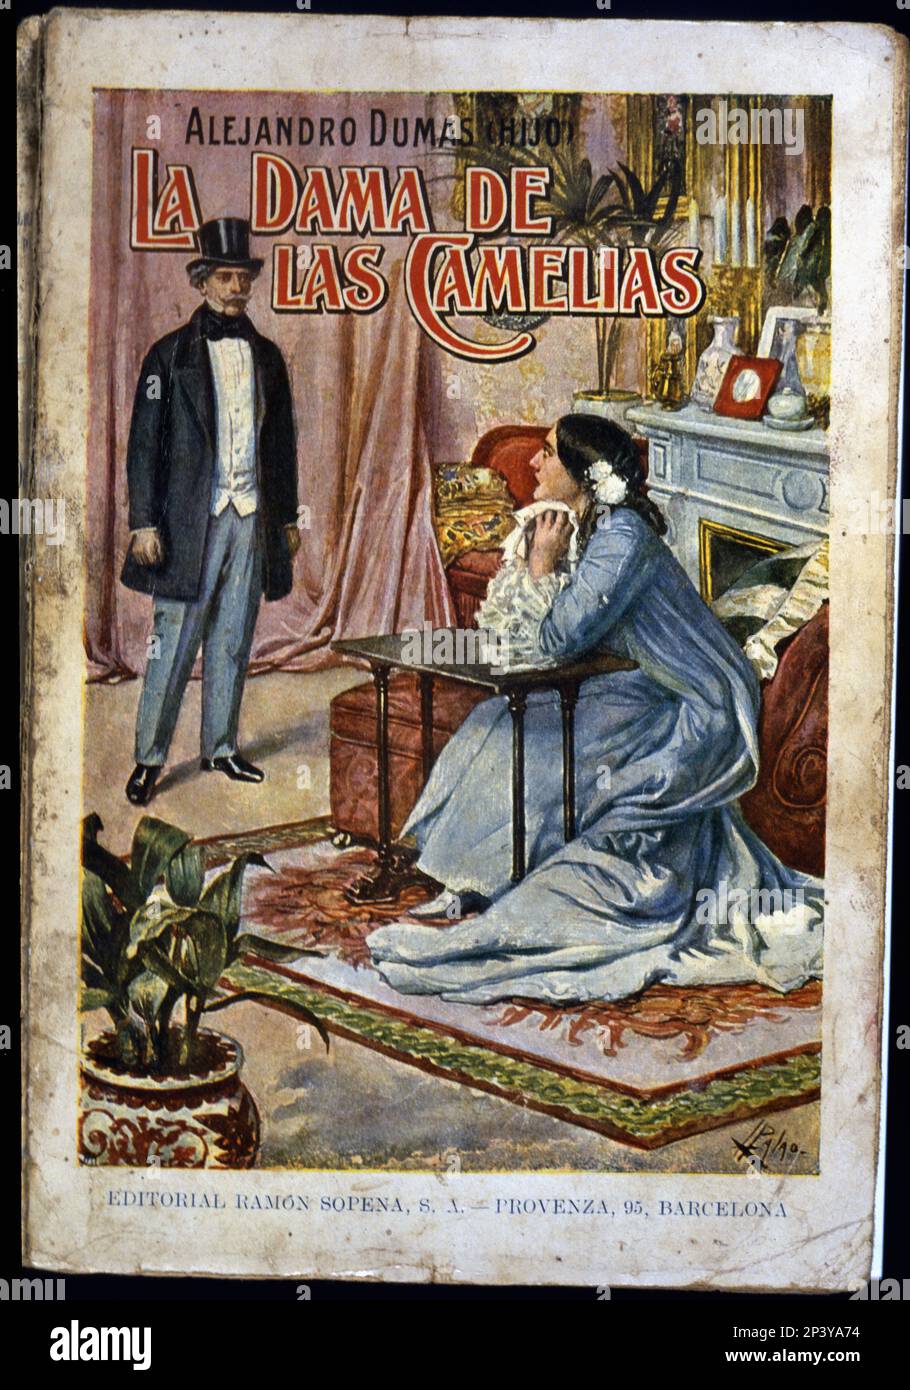 Couverture du roman « la dame des camélias », publié par Editorial RAM&#XF3;n Sogena de Barcelone en 1935. Banque D'Images